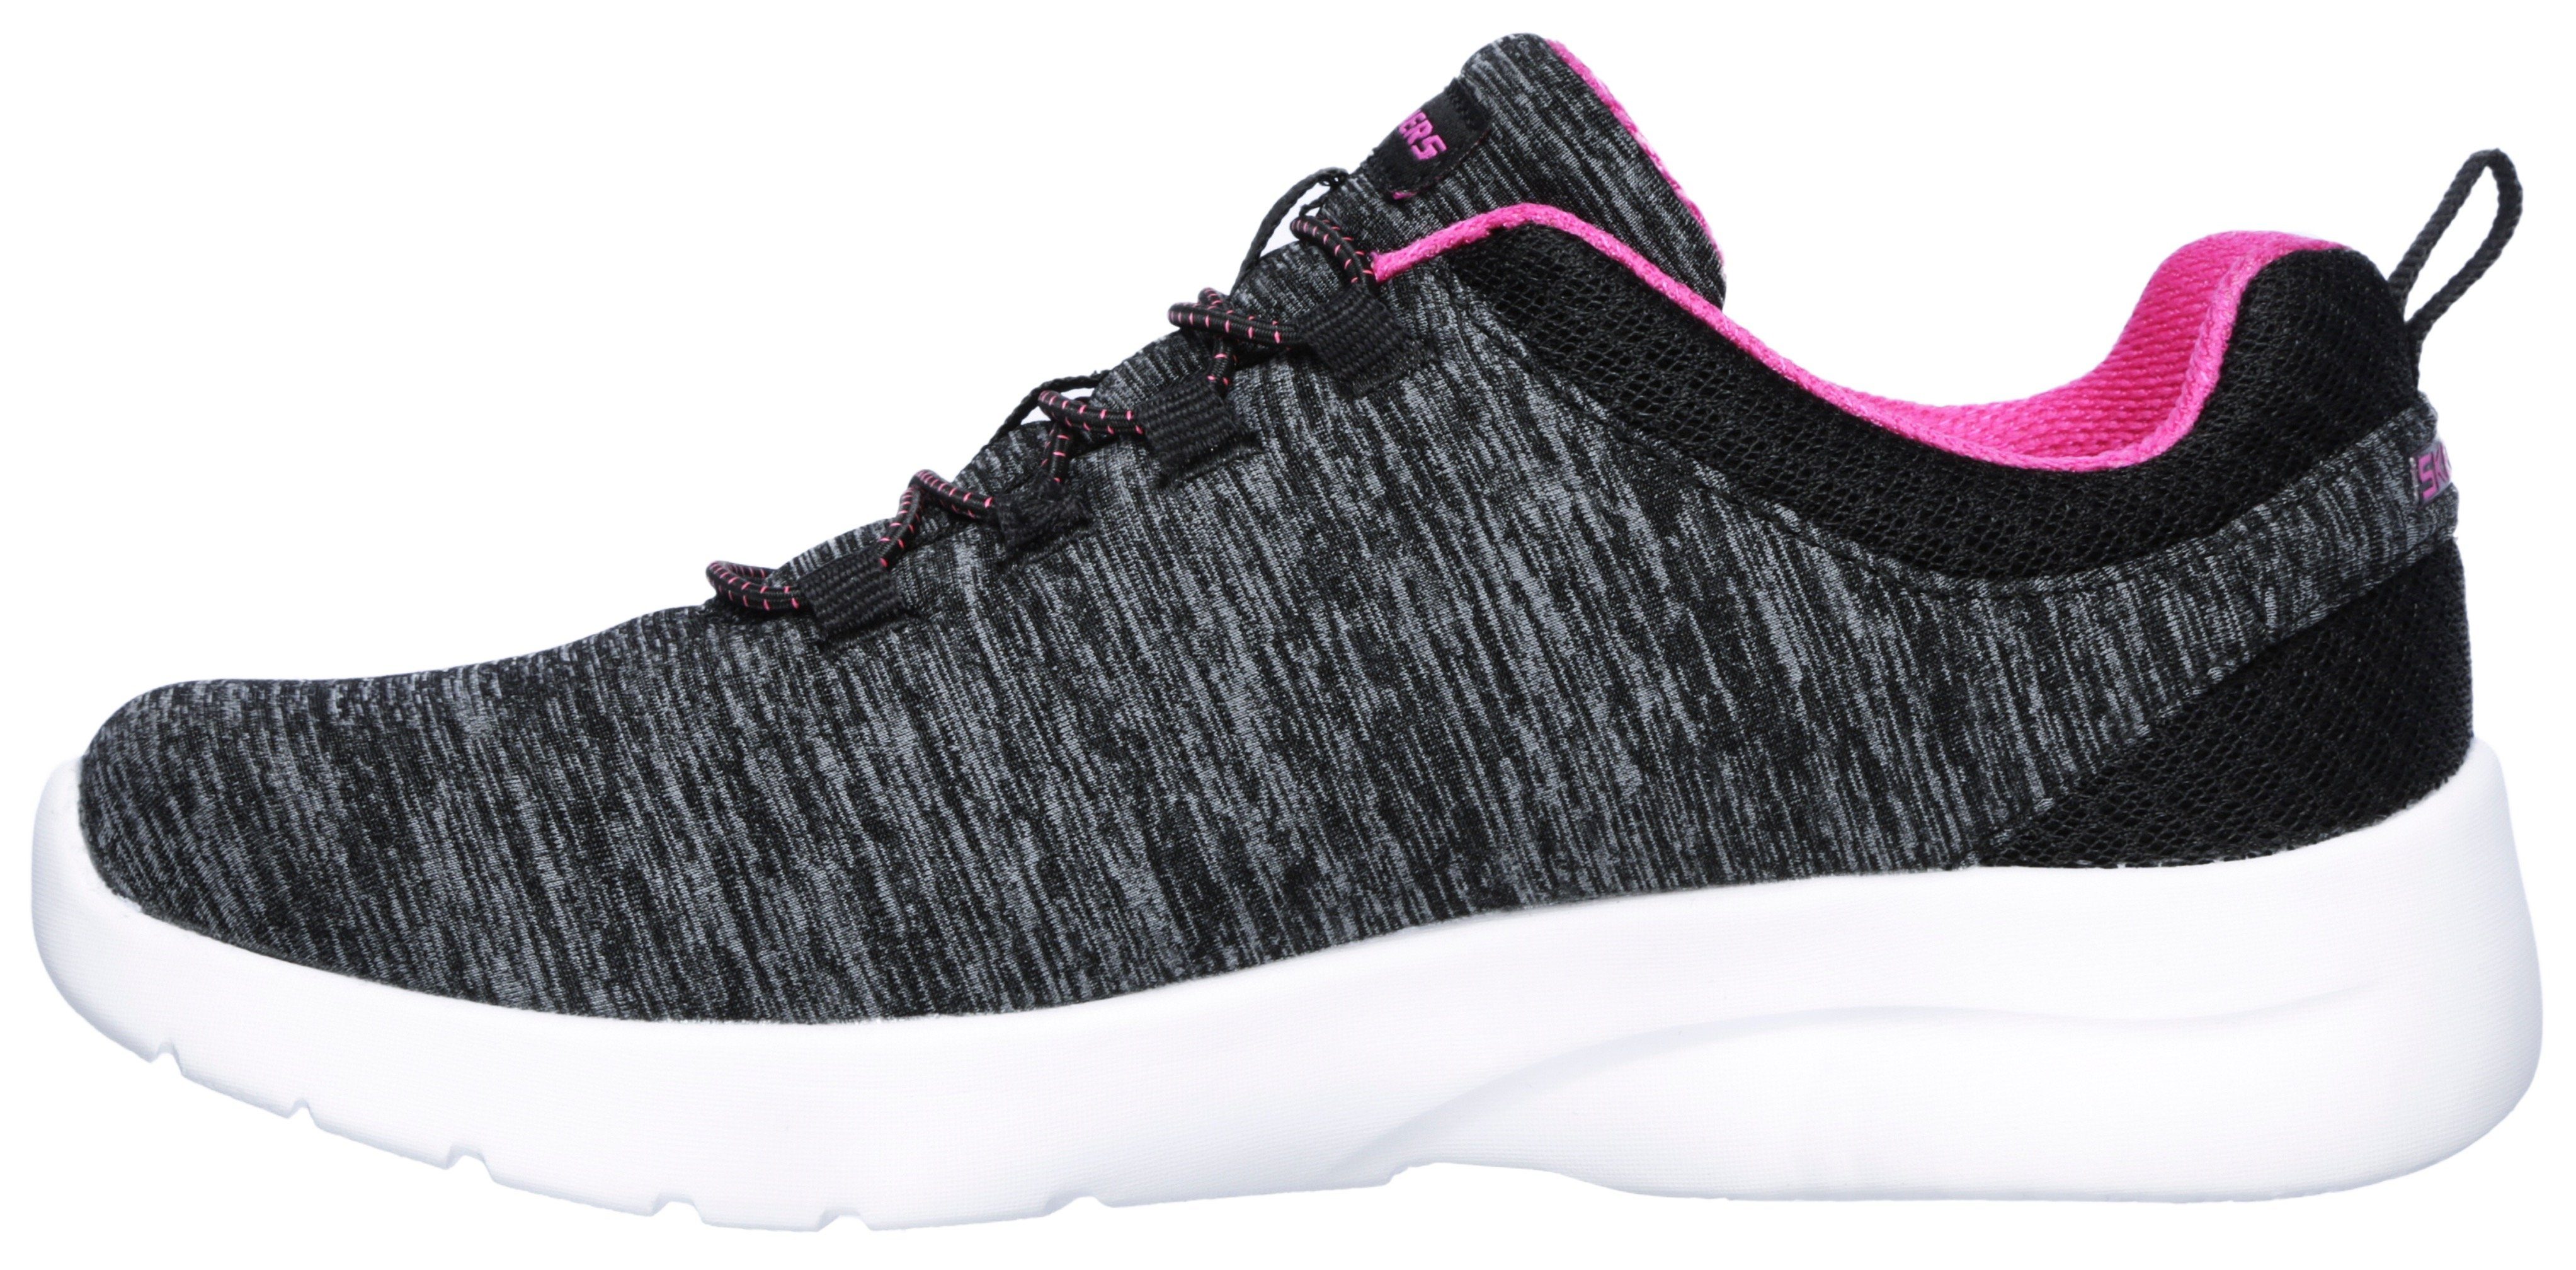 Skechers DYNAMIGHT 2.0-IN A FLASH geeignet Slip-On Sneaker Maschinenwäsche schwarz-pink für